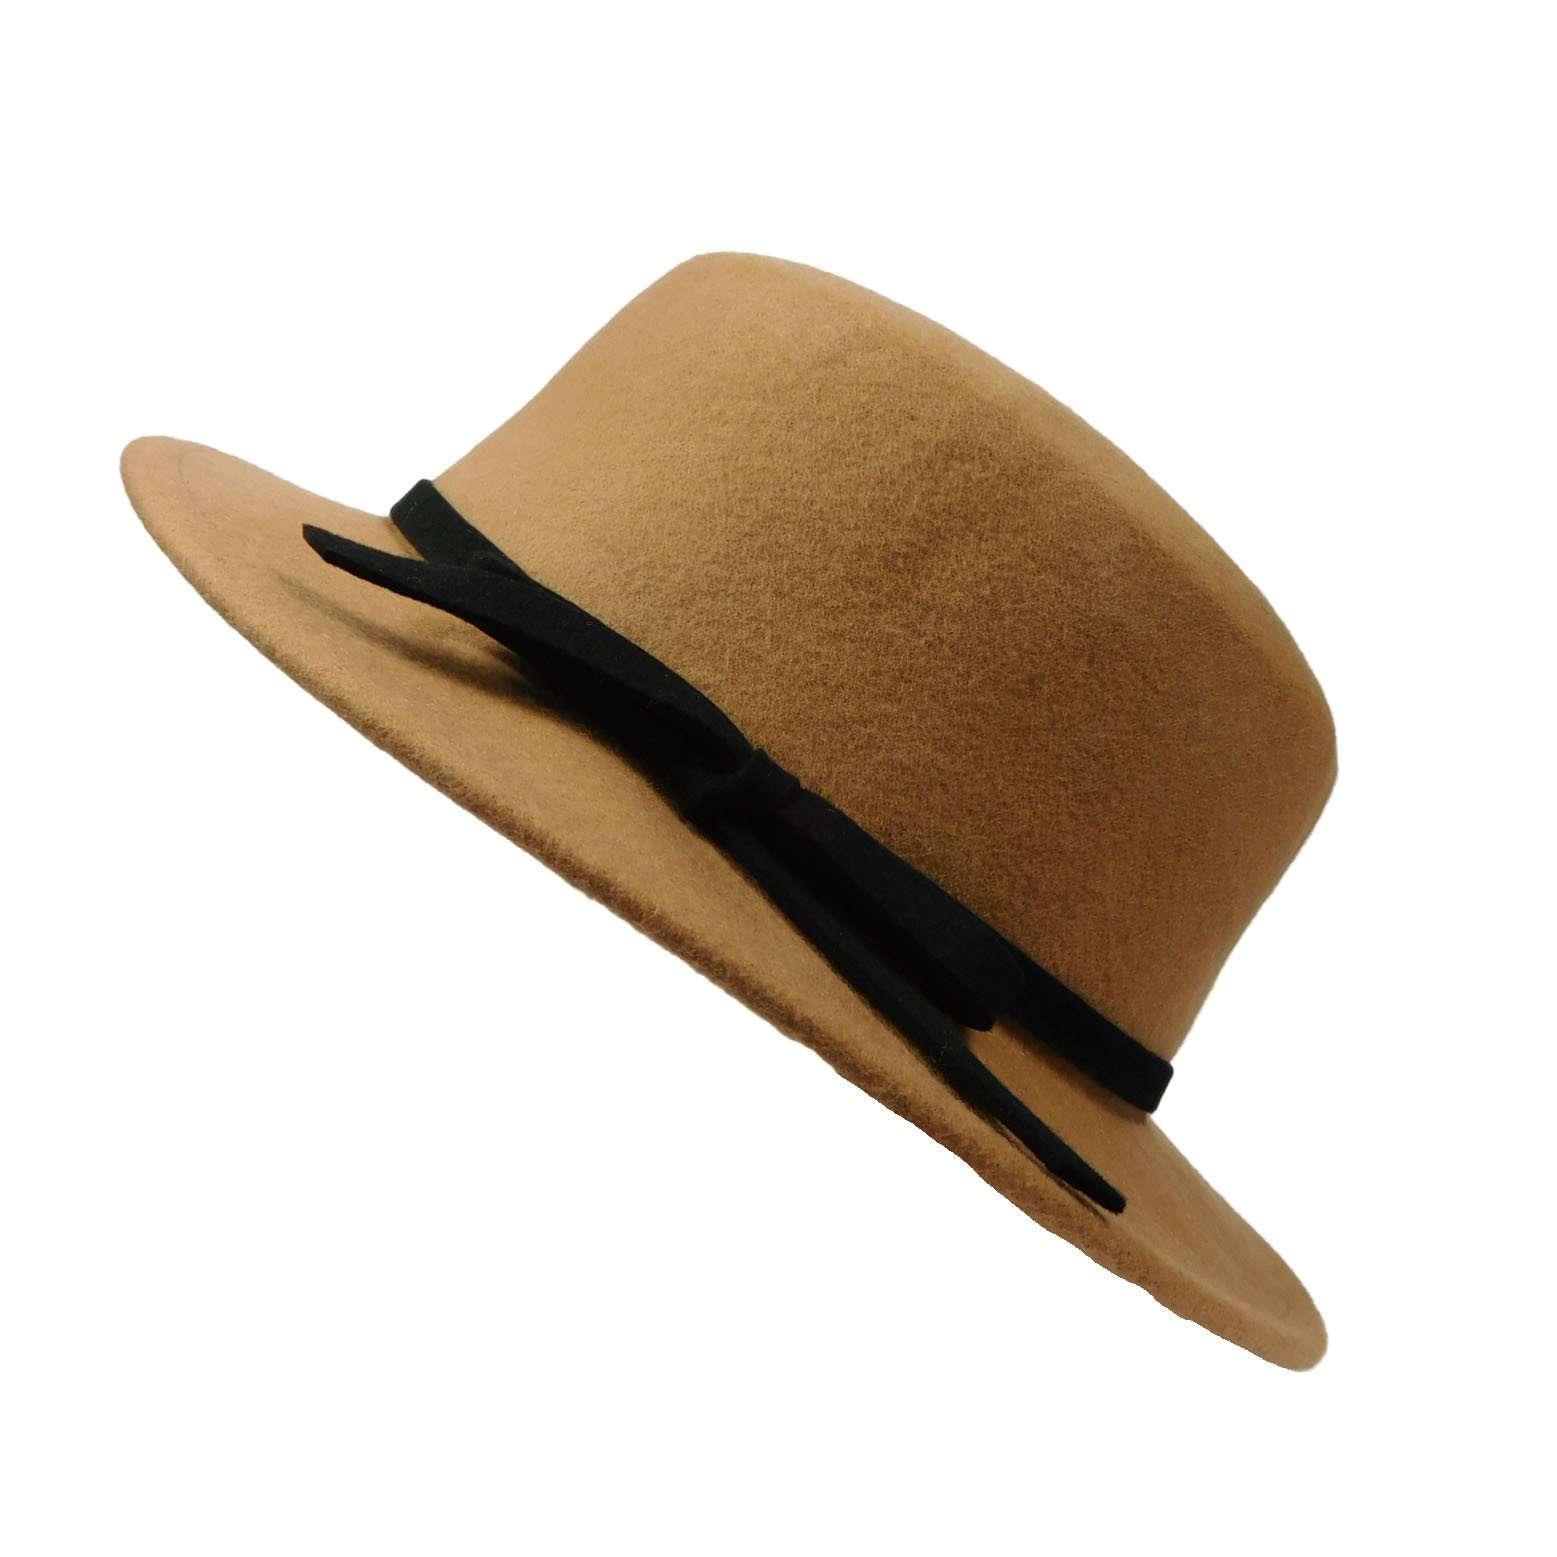 Small Brim Bolero Style Wool Felt Hat - JSA for Women, Bolero Hat - SetarTrading Hats 